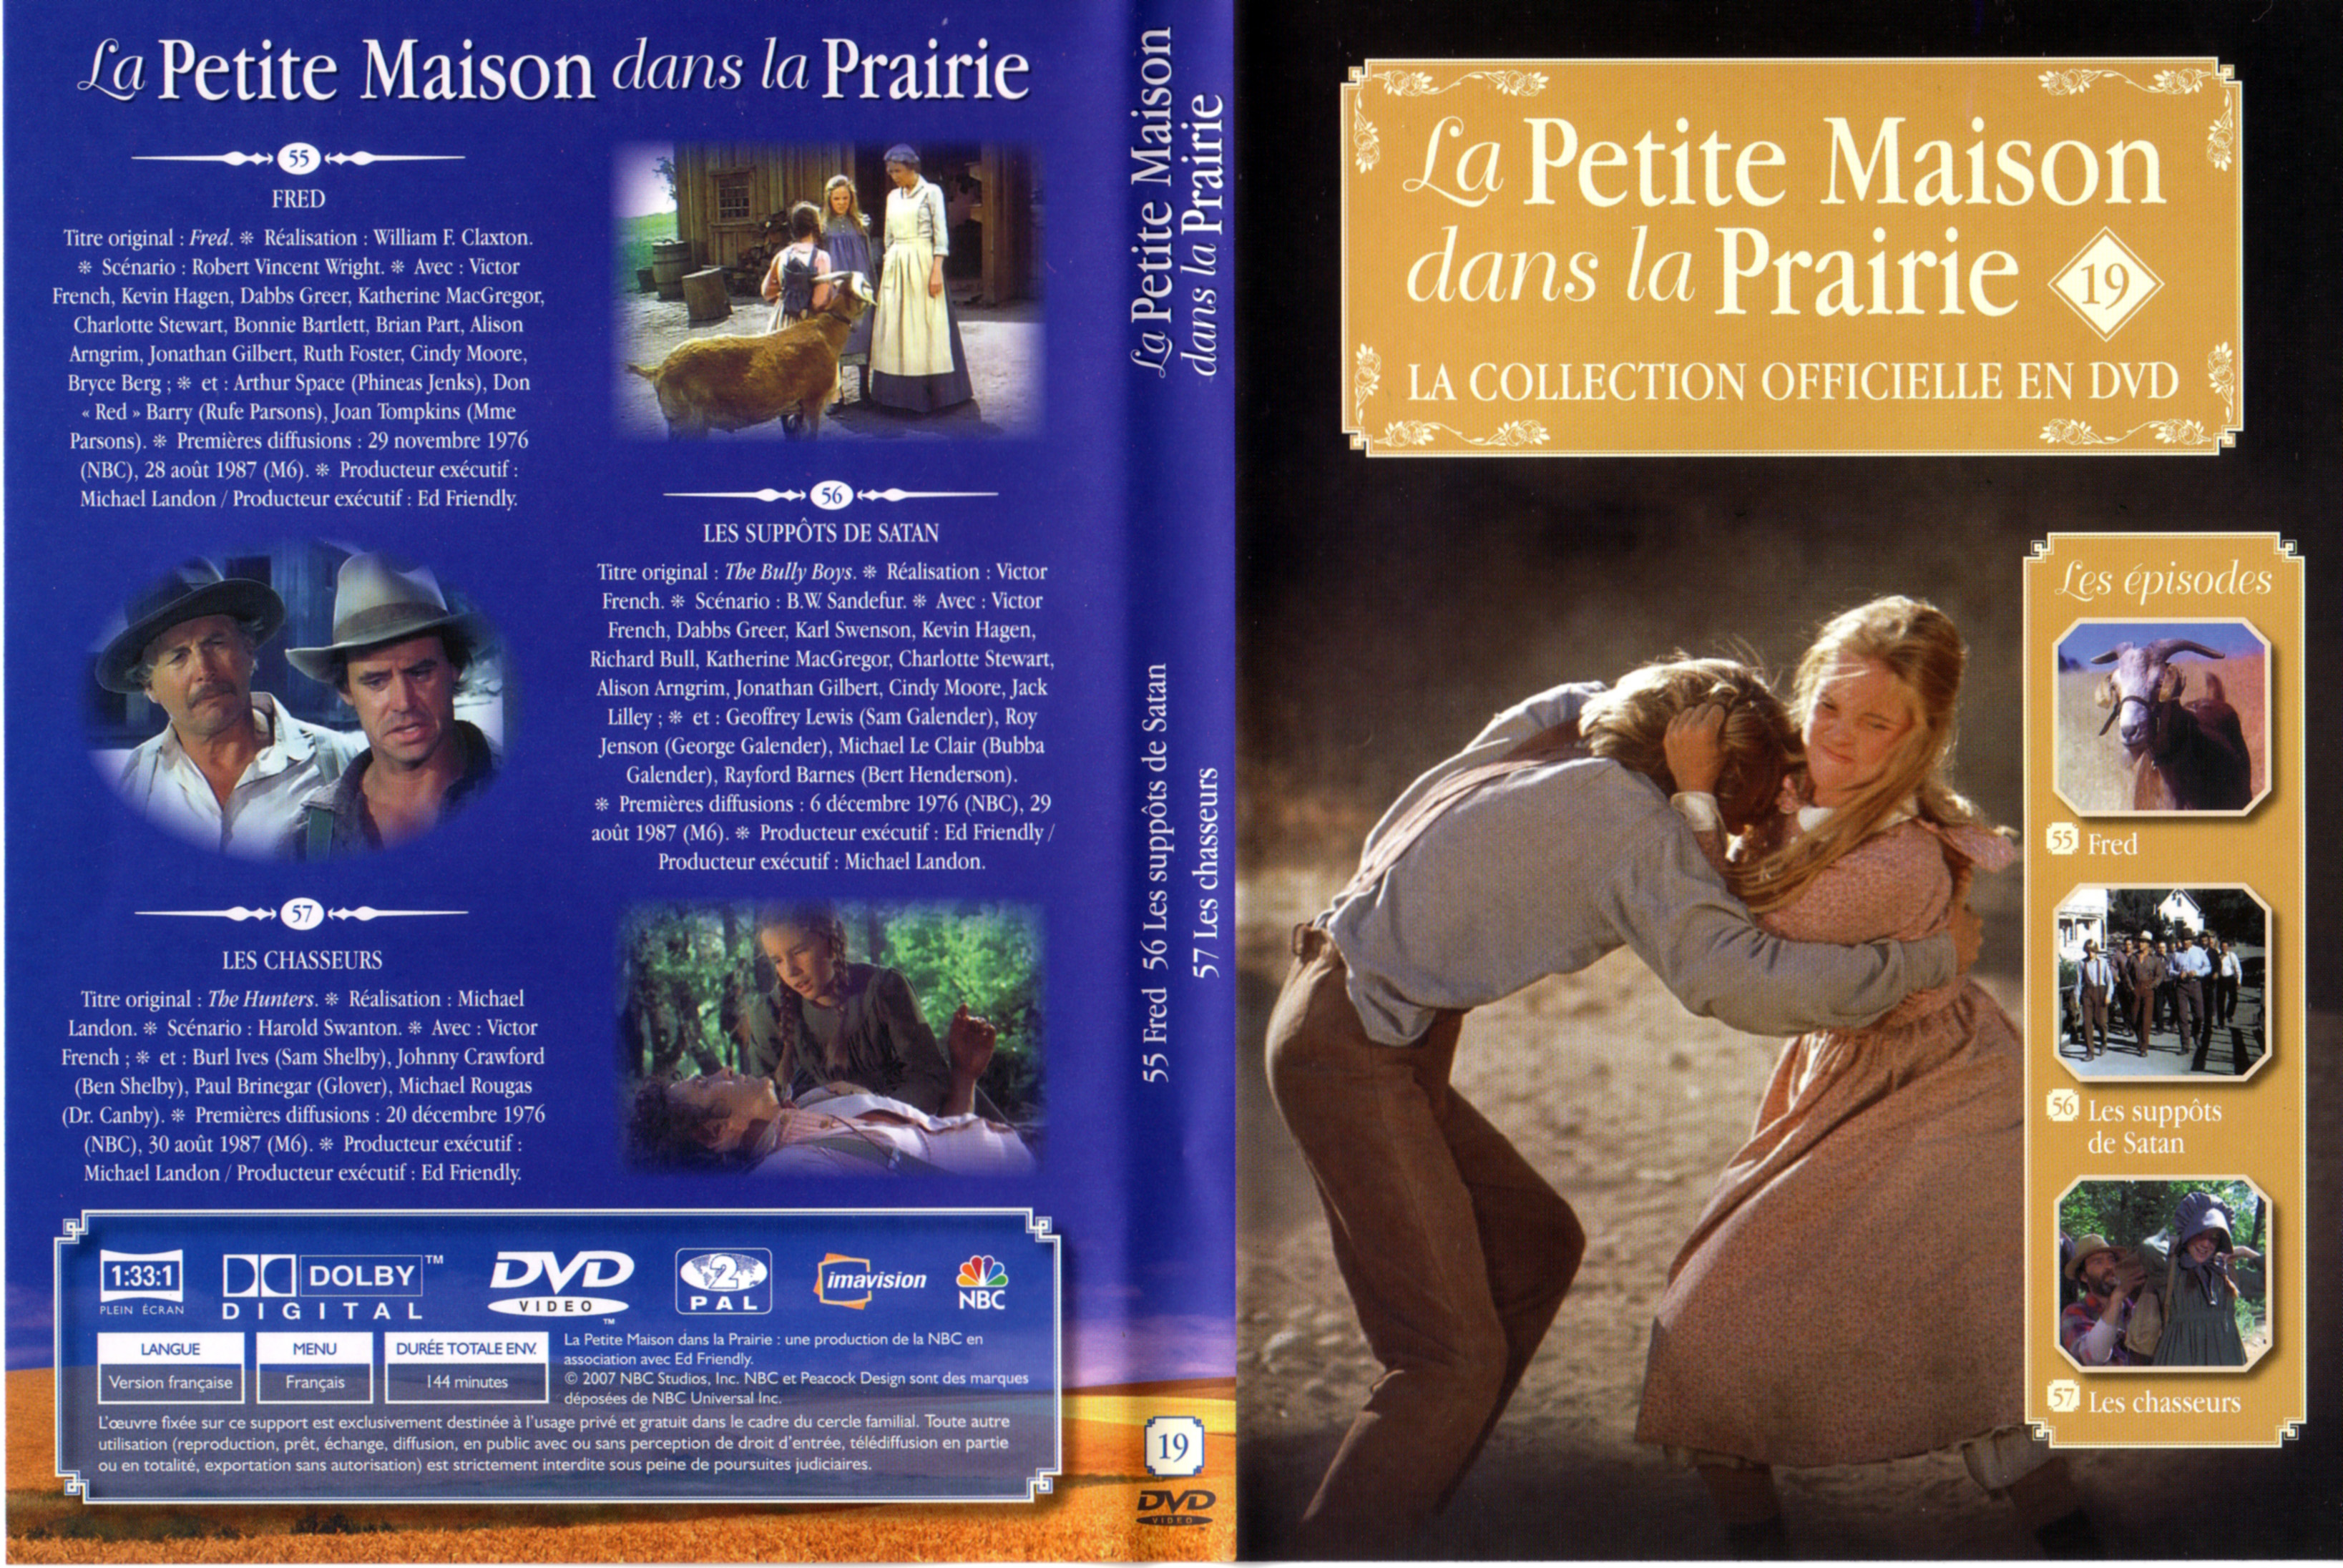 Jaquette DVD La petite maison dans la prairie La Collection vol 19